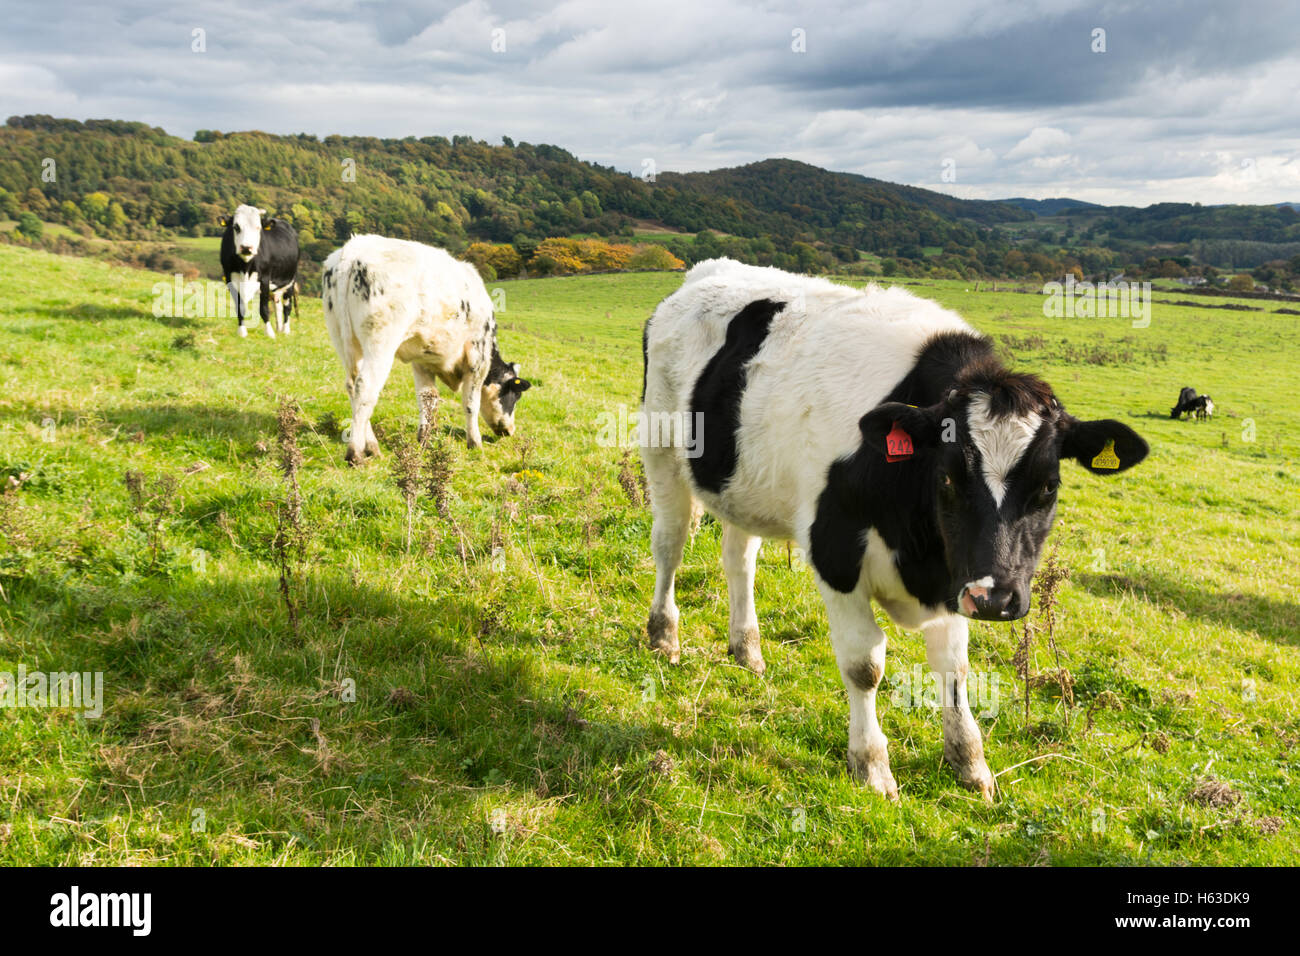 Vacche nel parco nazionale di Peak District, un'area che copre l'estremità meridionale dell'inglese Pennines, principalmente nel Derbyshire. Foto Stock